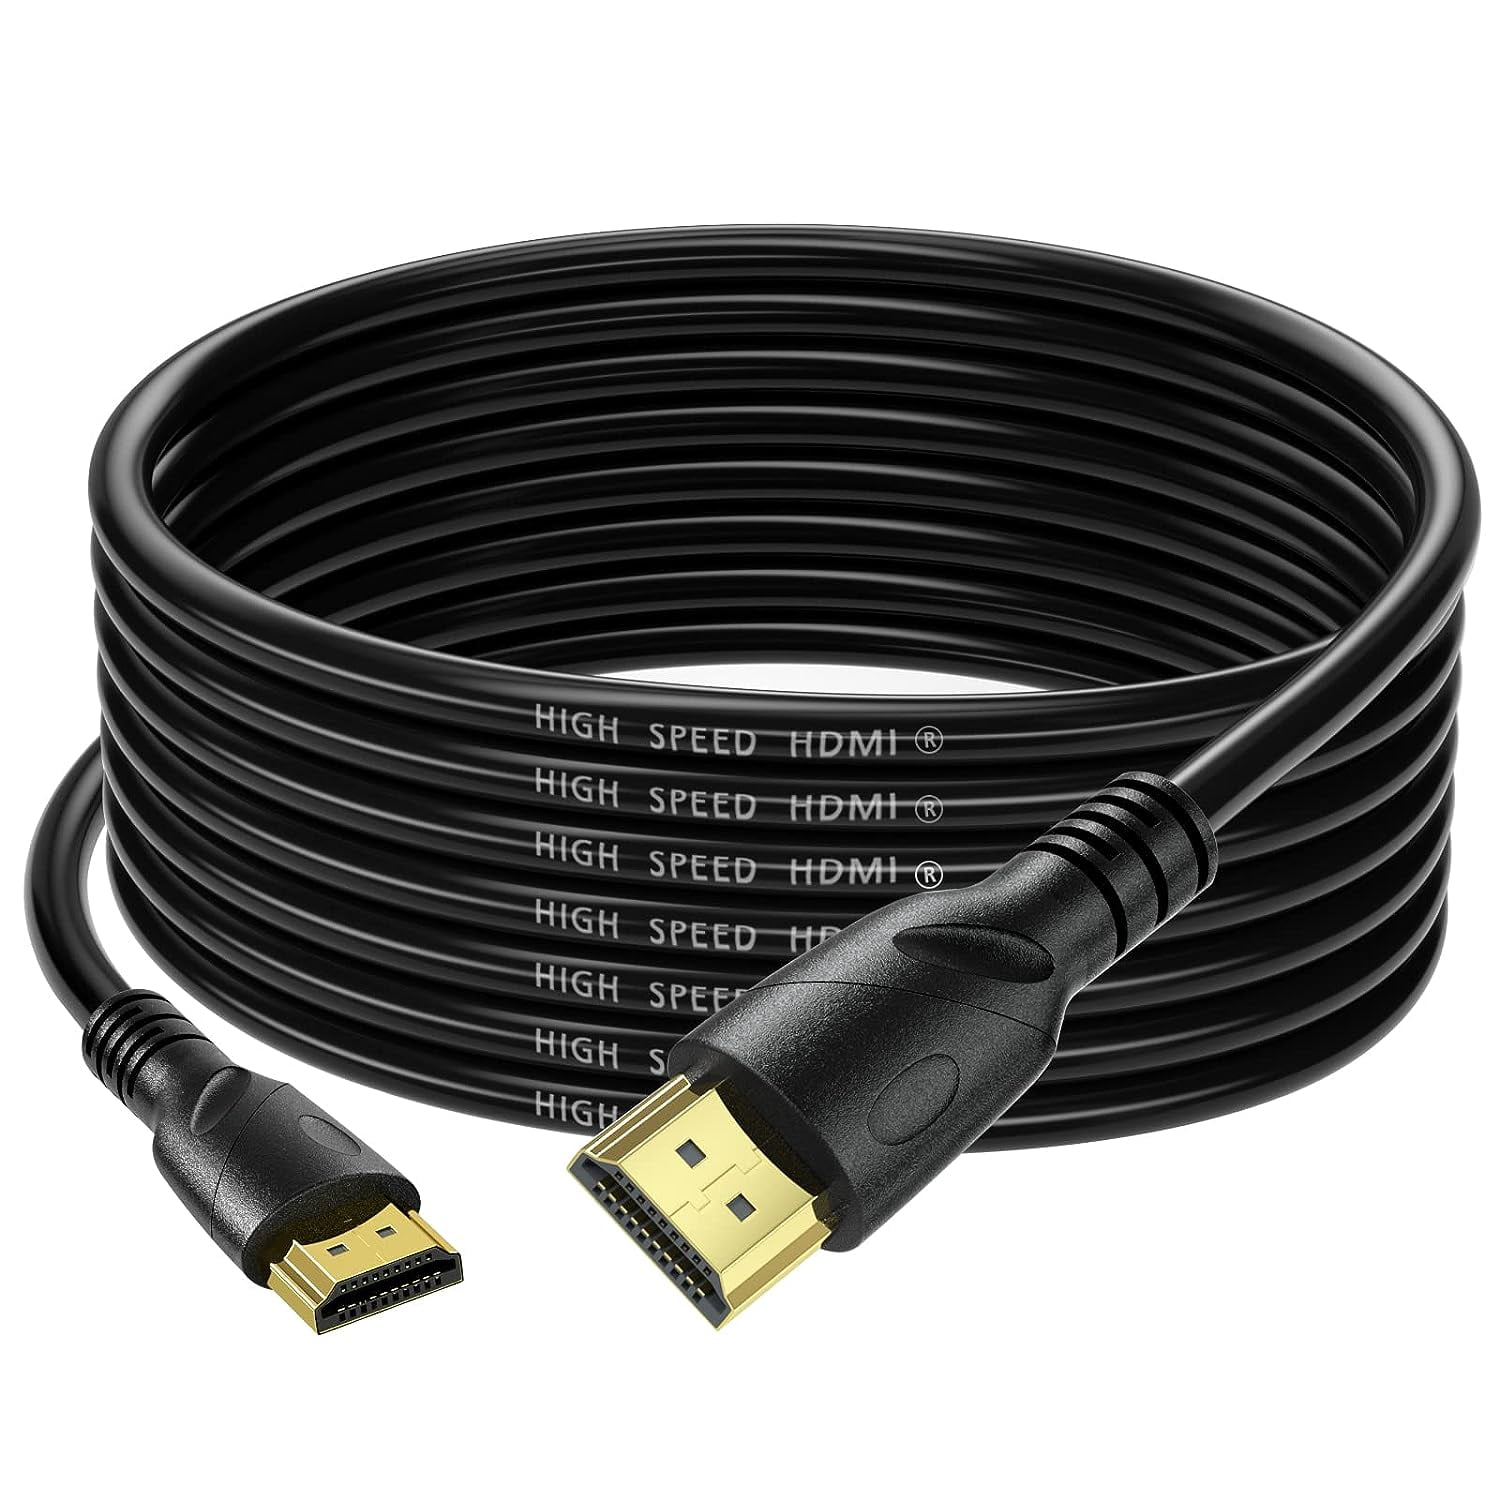 Cable HDMI 2.0 15 Metros SANTOFA Ultra HD 3D 4K 60hz 2160P PVC - Promart